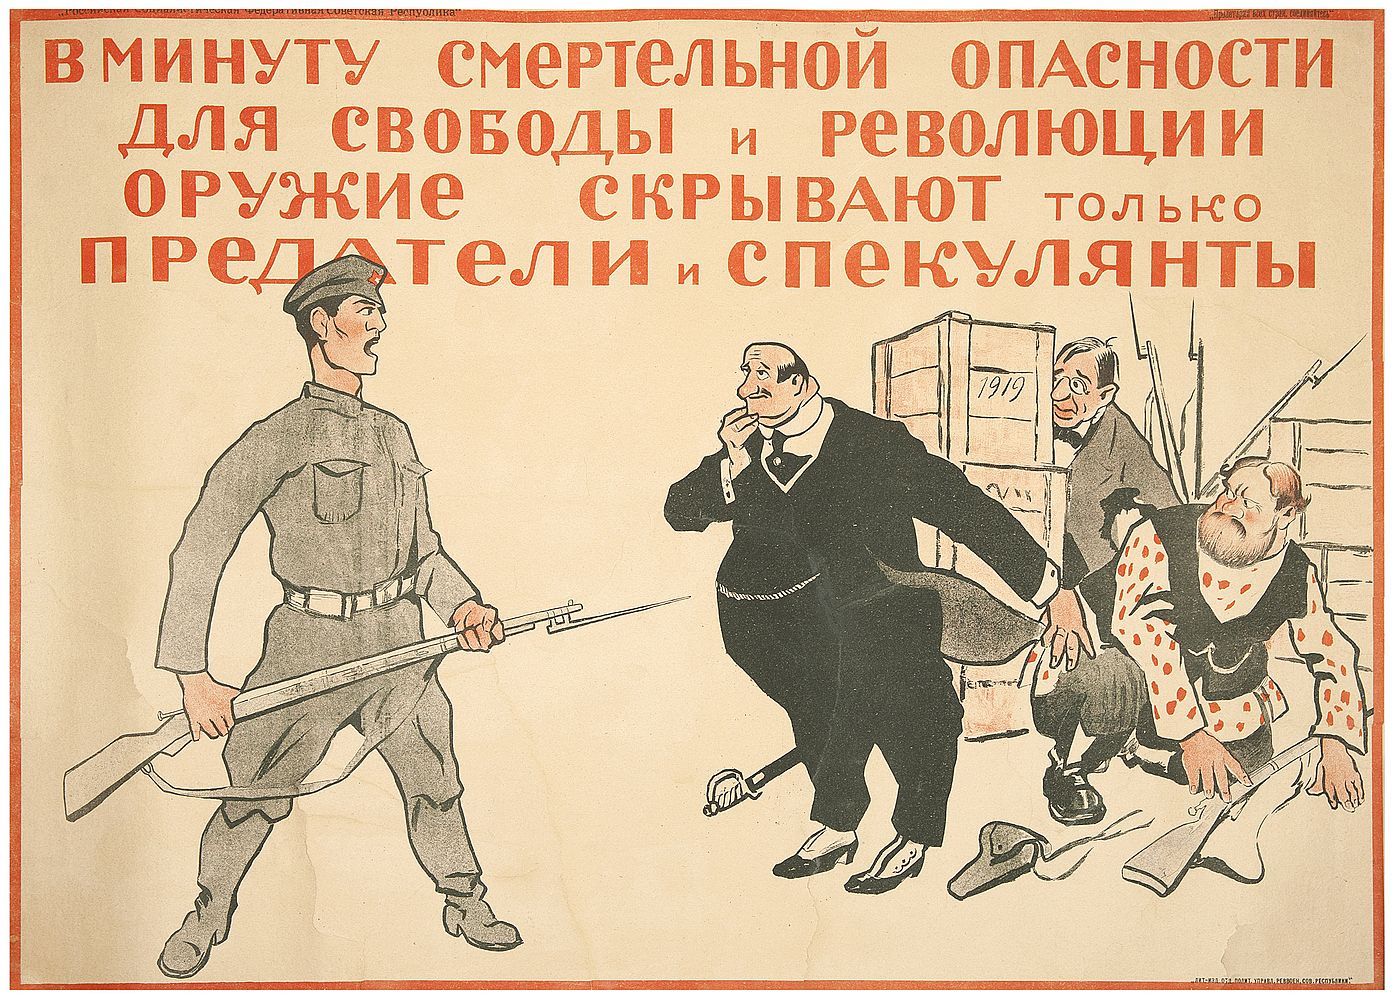 Н. Смирнов. Плакат РСФСР. Спекулянты и предатели. 1920